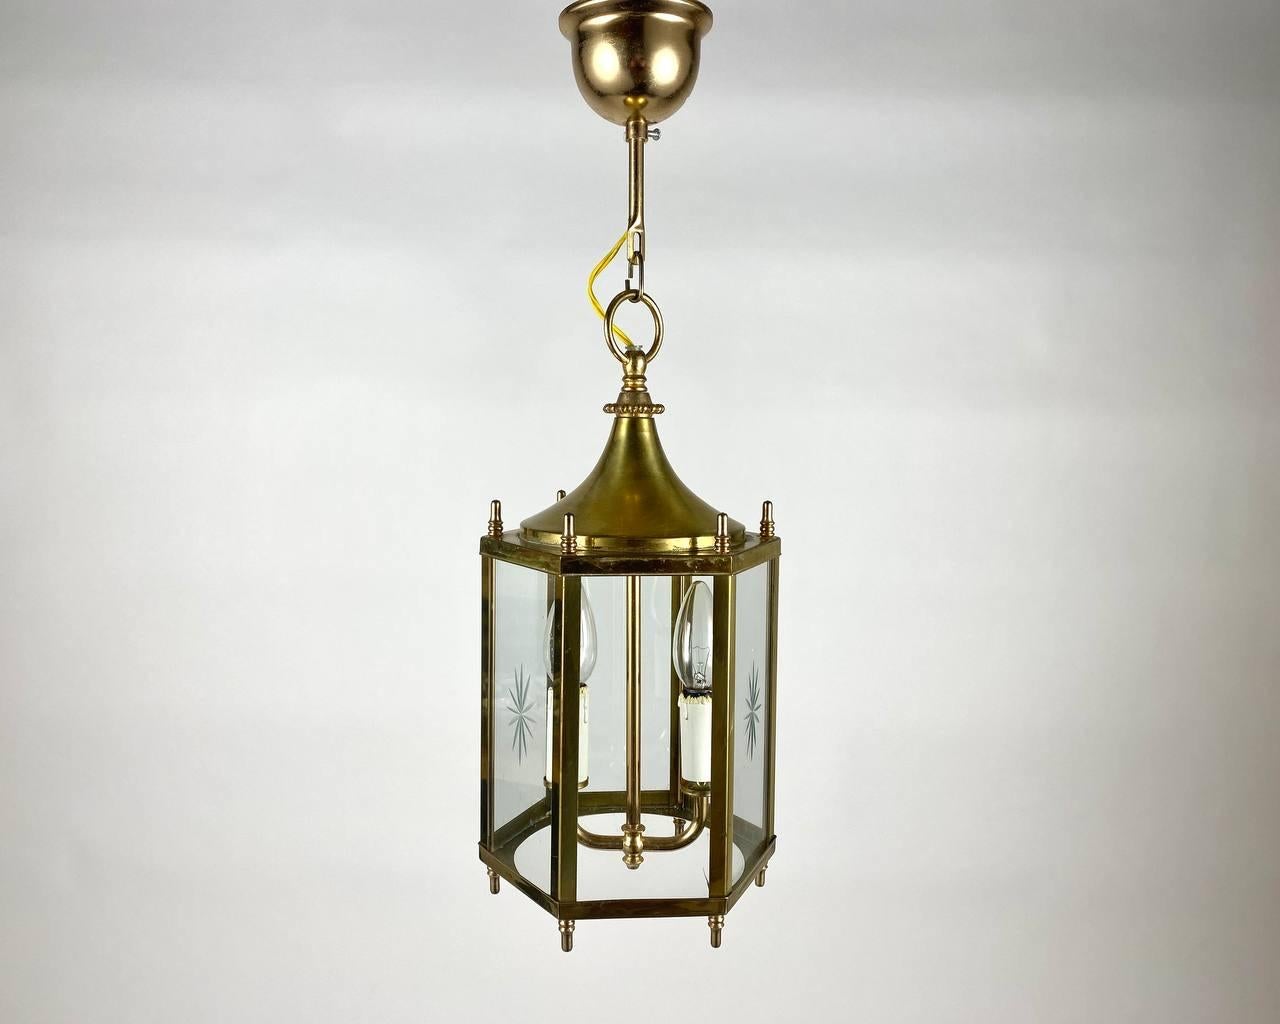 Lustre artisanal vintage - lanterne pour deux points lumineux fabriqué dans les années 1970-1980. 

Un lustre du fabricant est une combinaison étonnante de la garantie du fabricant et du design du luminaire.

L'abat-jour hexagonal est livré avec